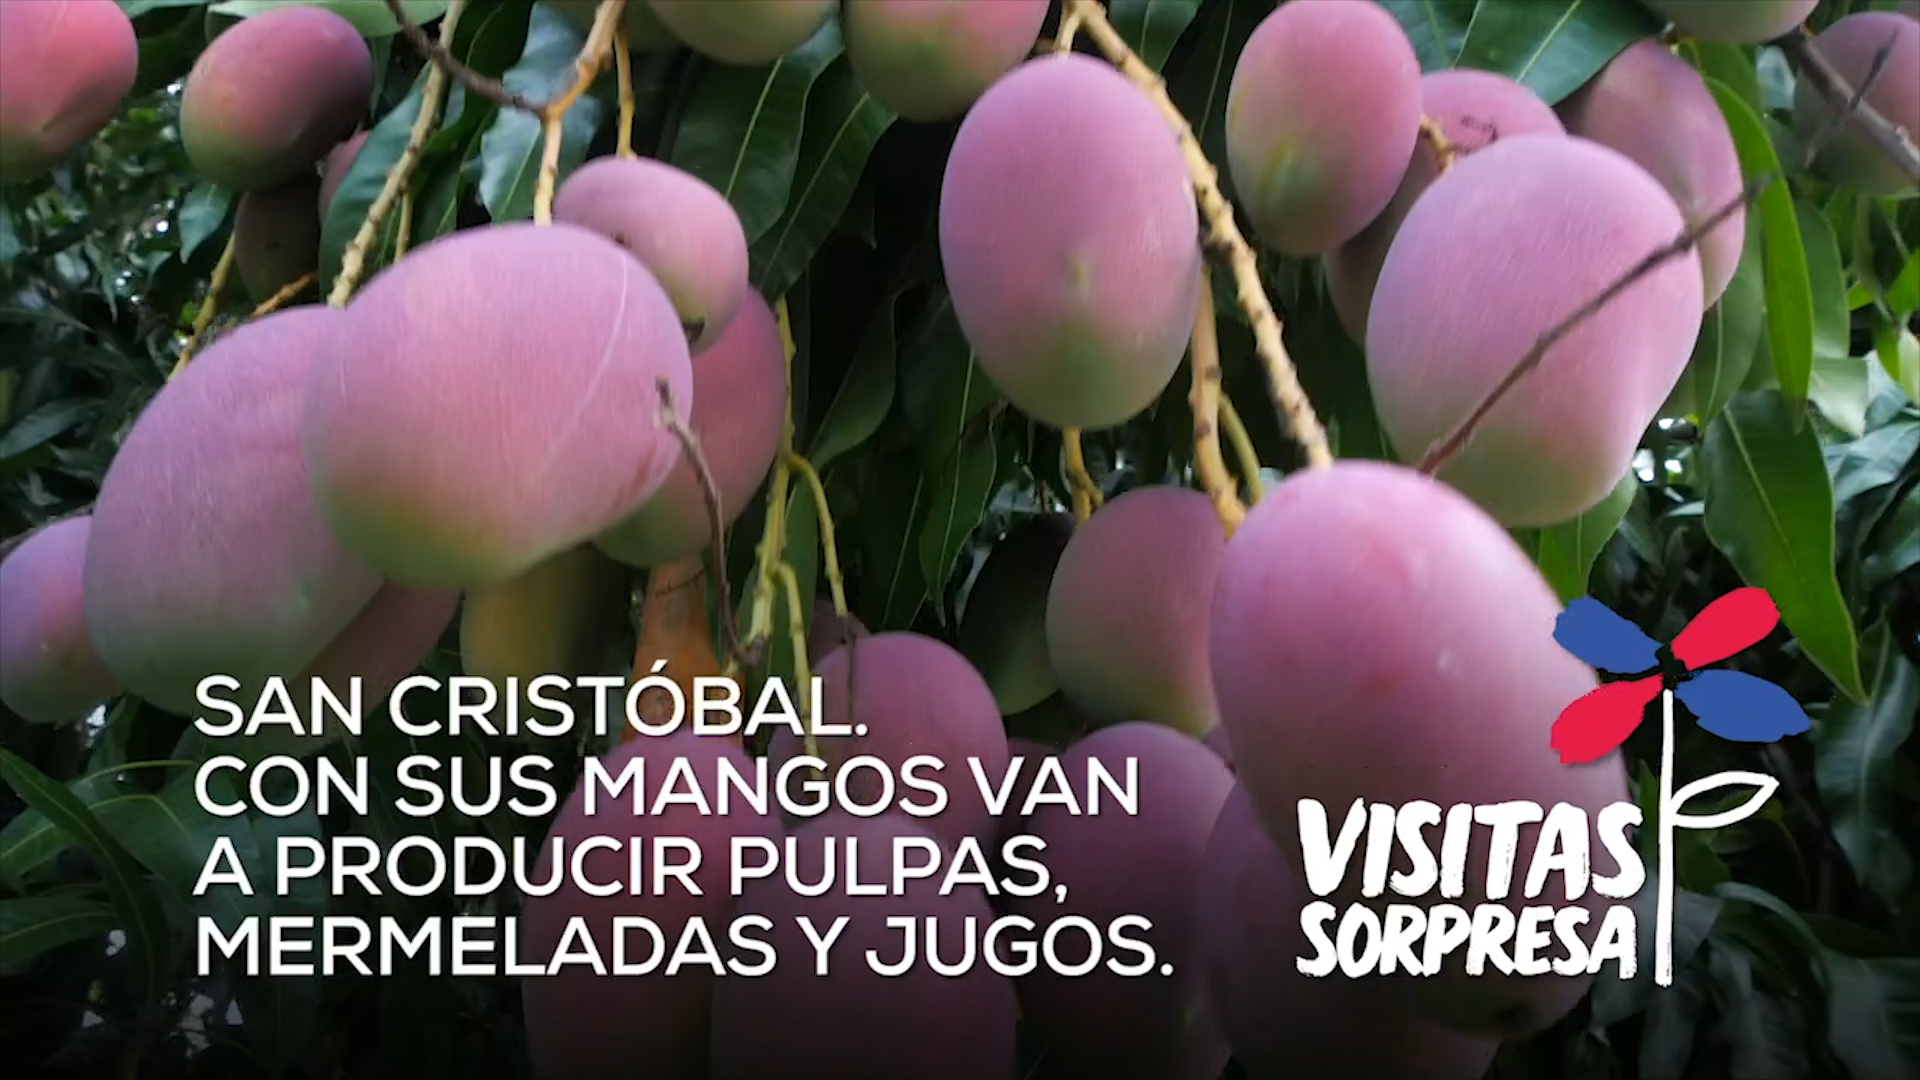 REPÚBLICA DOMINICANA: San Cristóbal. Con sus mangos van a producir pulpas, mermeladas y jugos